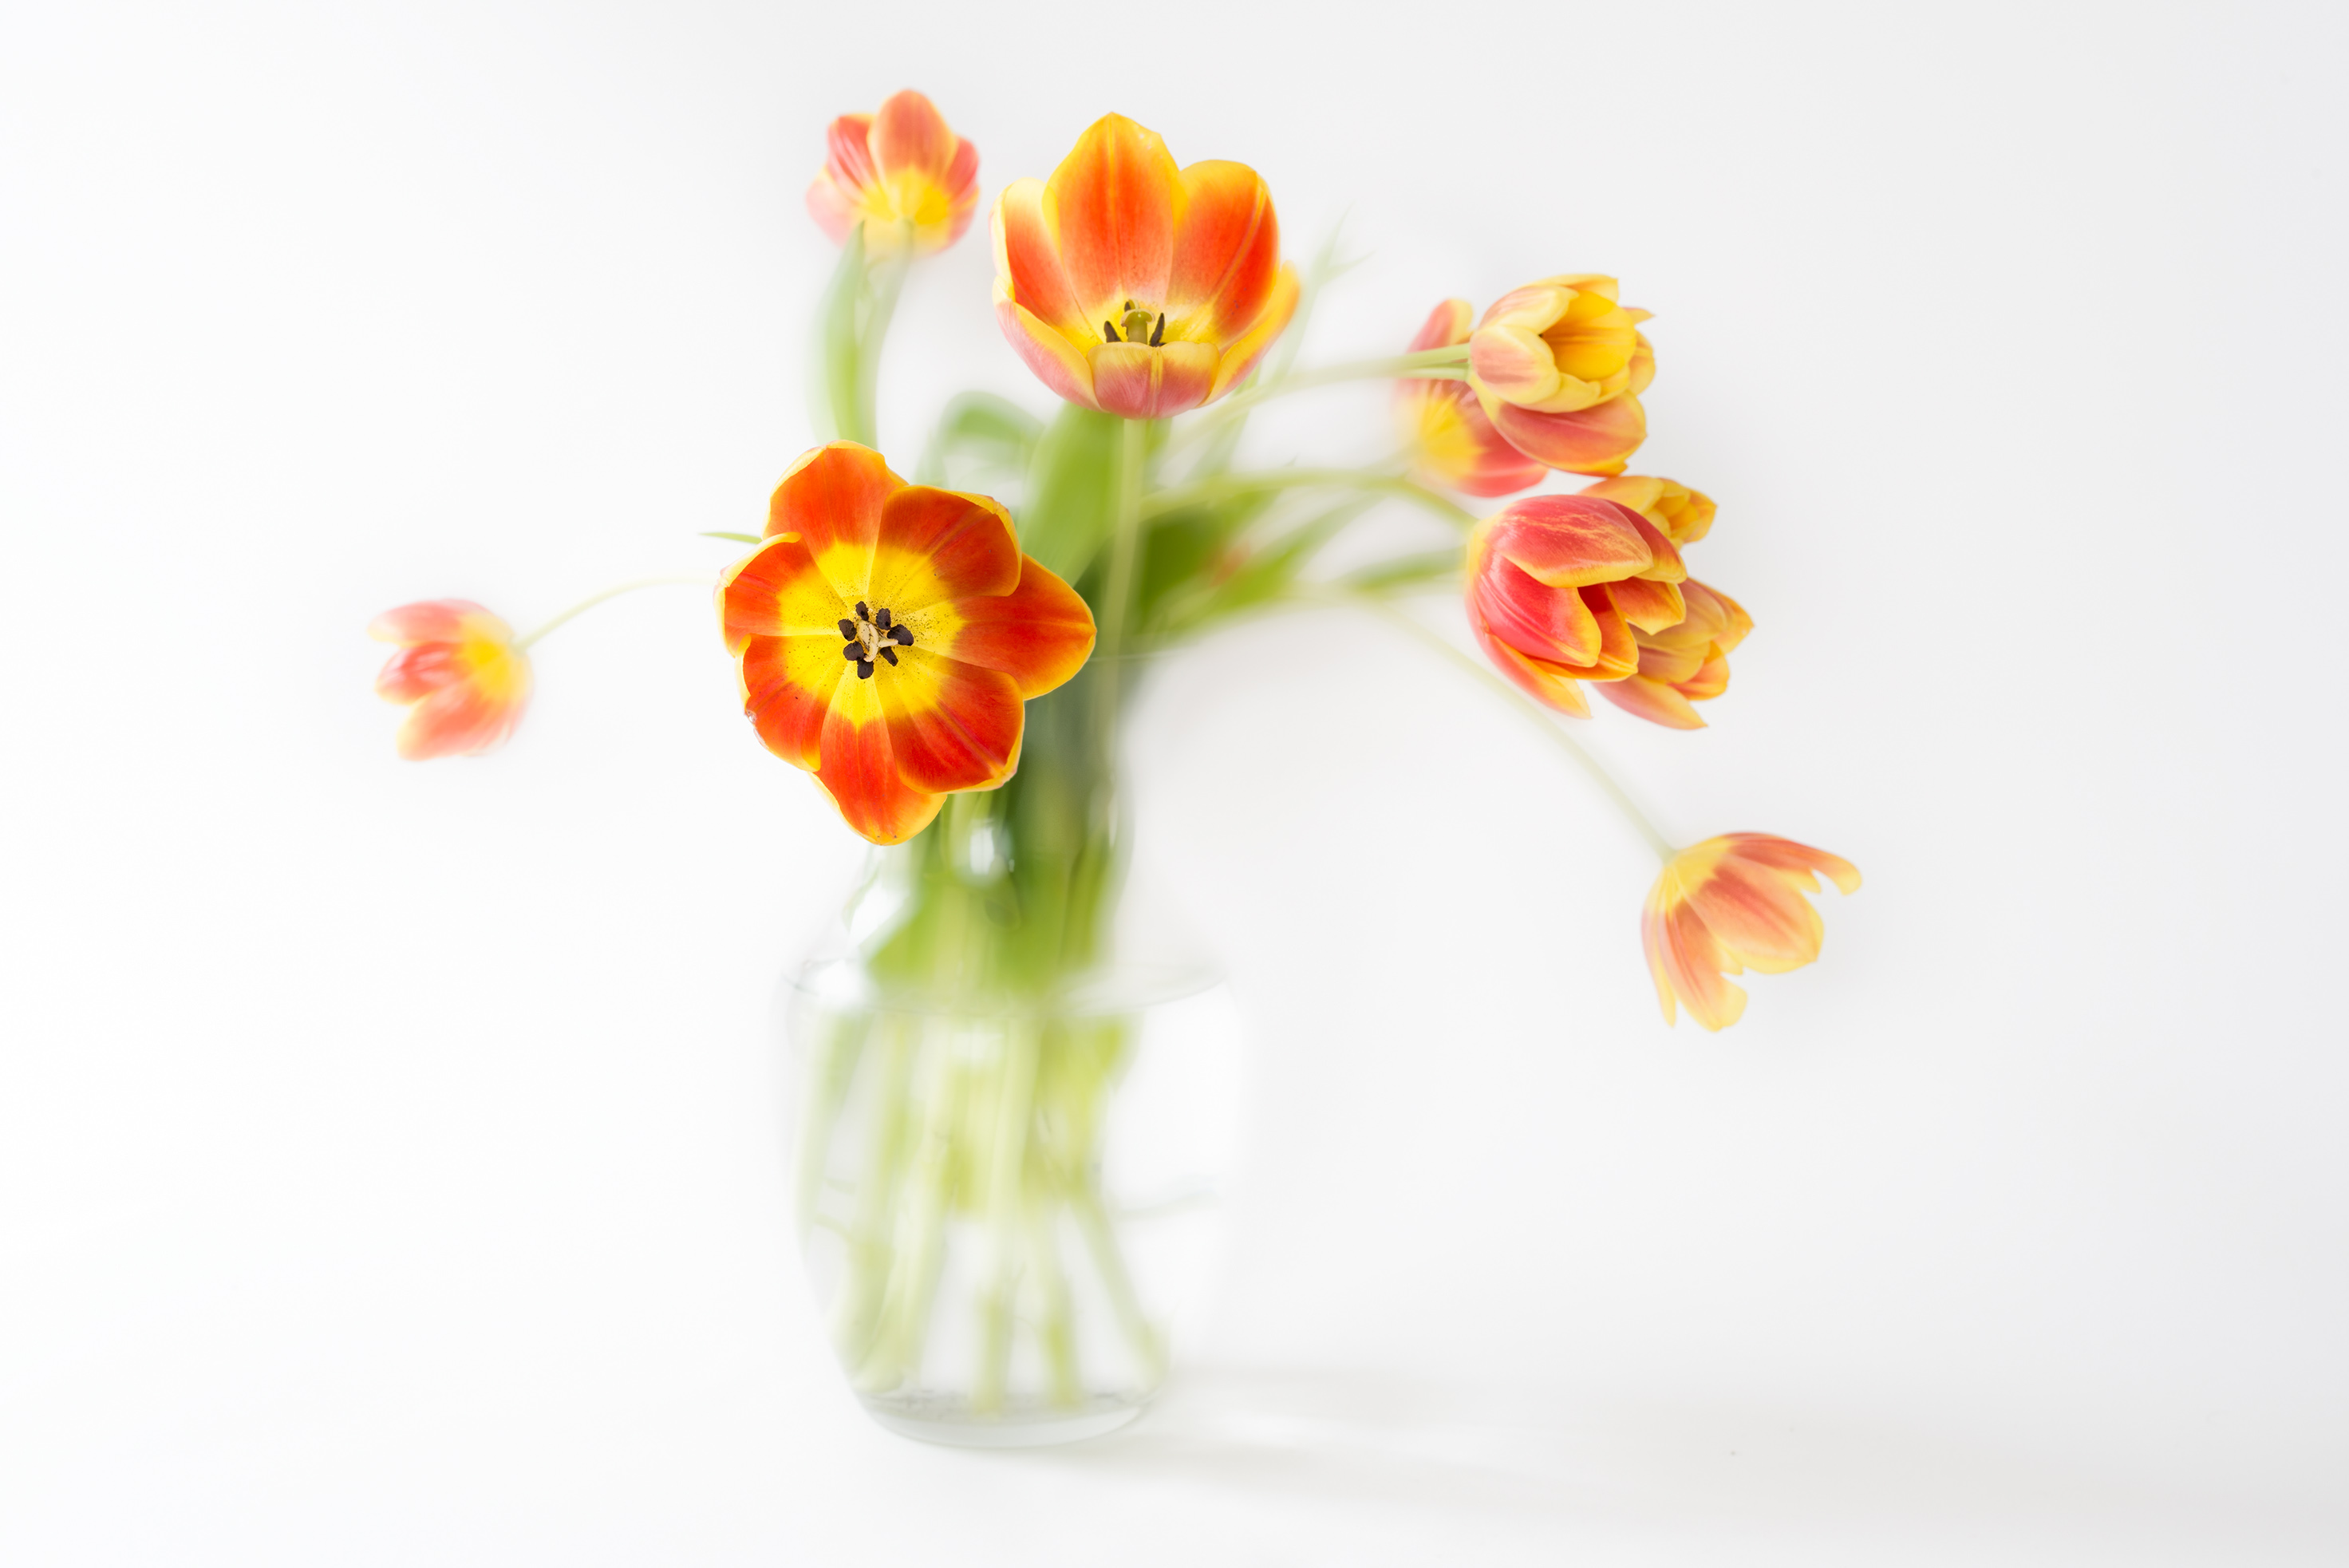 Tulips in a Vase on White © Harold Davis